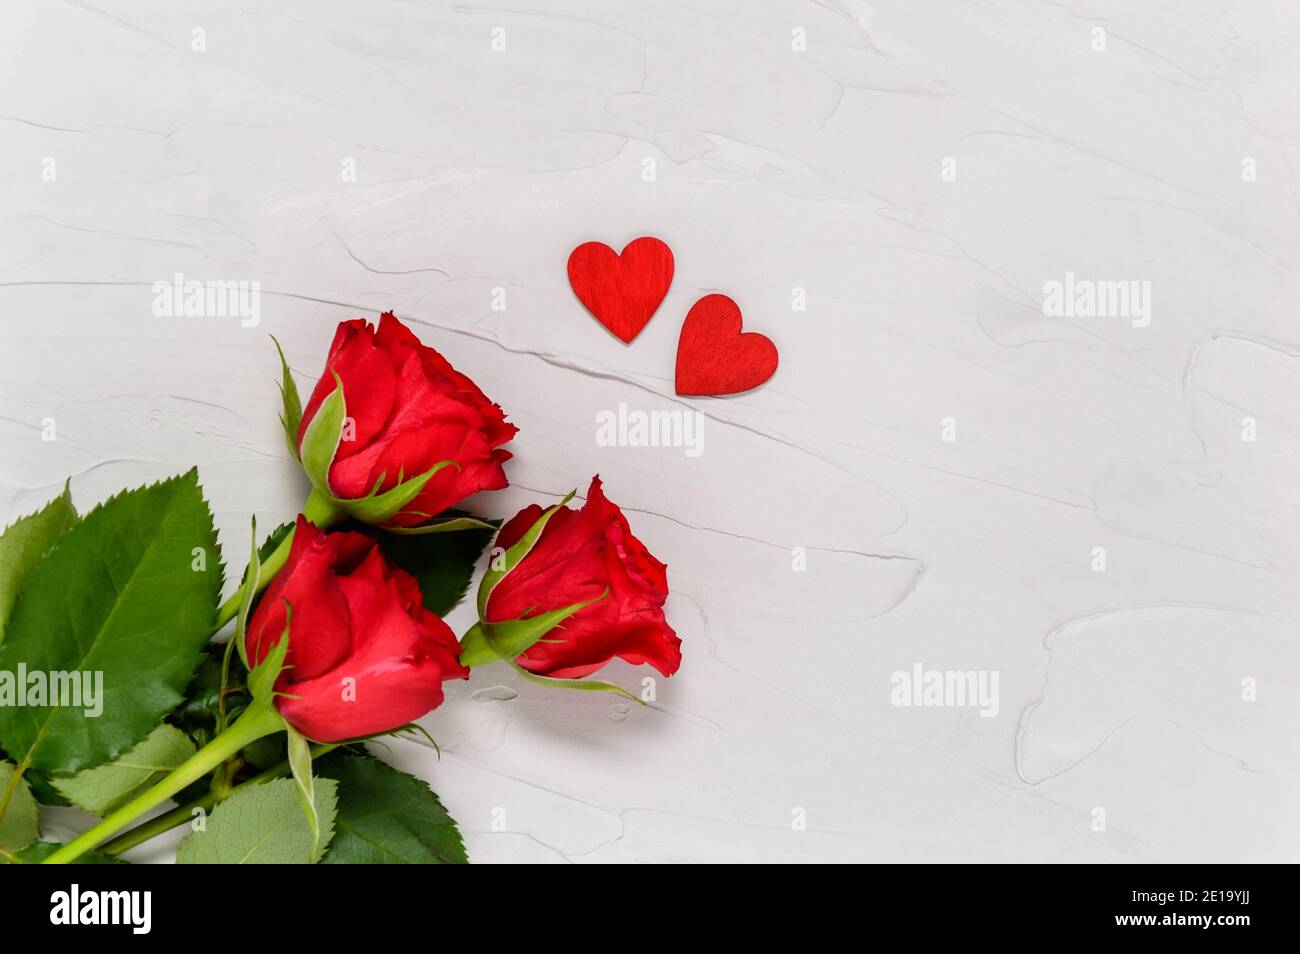 Roses rouges et deux coeurs en bois sur fond de béton texturé par le dessus. Concept d'amour et de convivialité. Saint-Valentin, Fête des mères. Pose à plat Banque D'Images